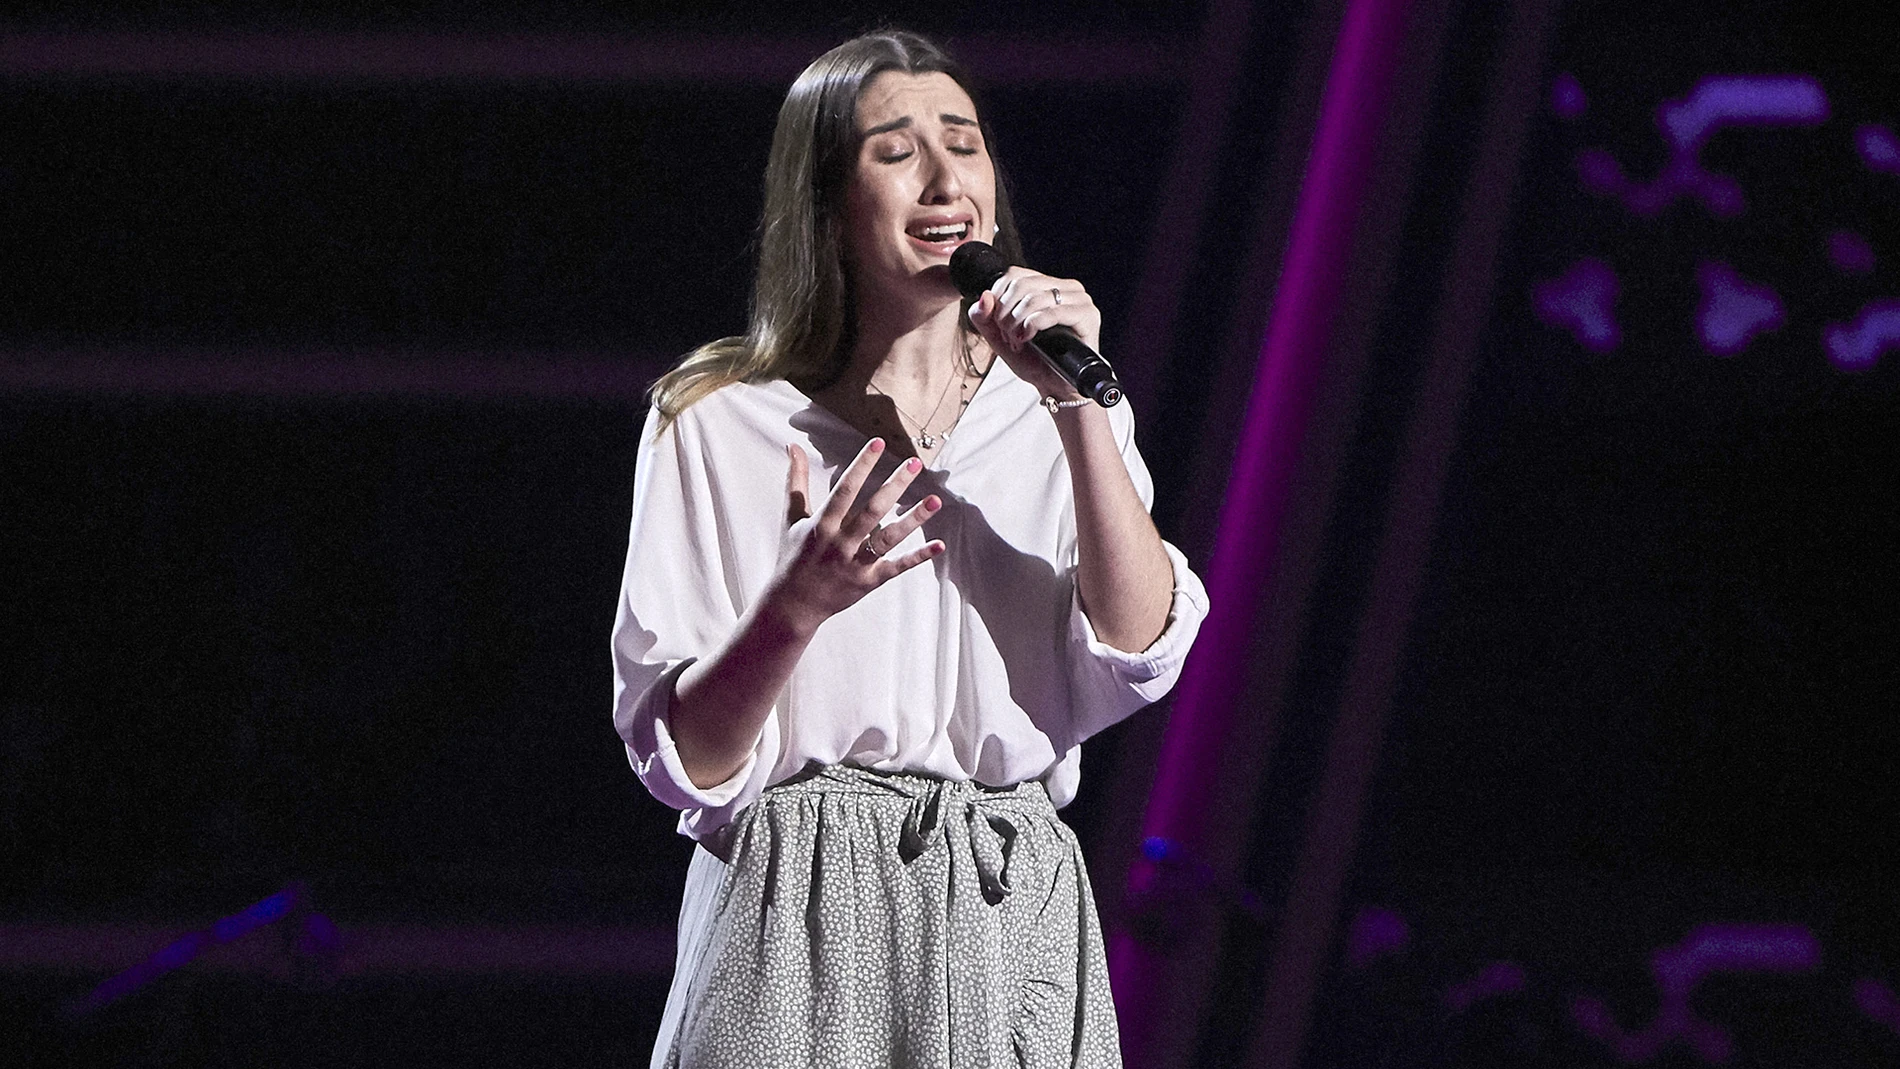 María Torregrosa canta ‘Comiéndote a besos’ en las Audiciones a ciegas de ‘La Voz’